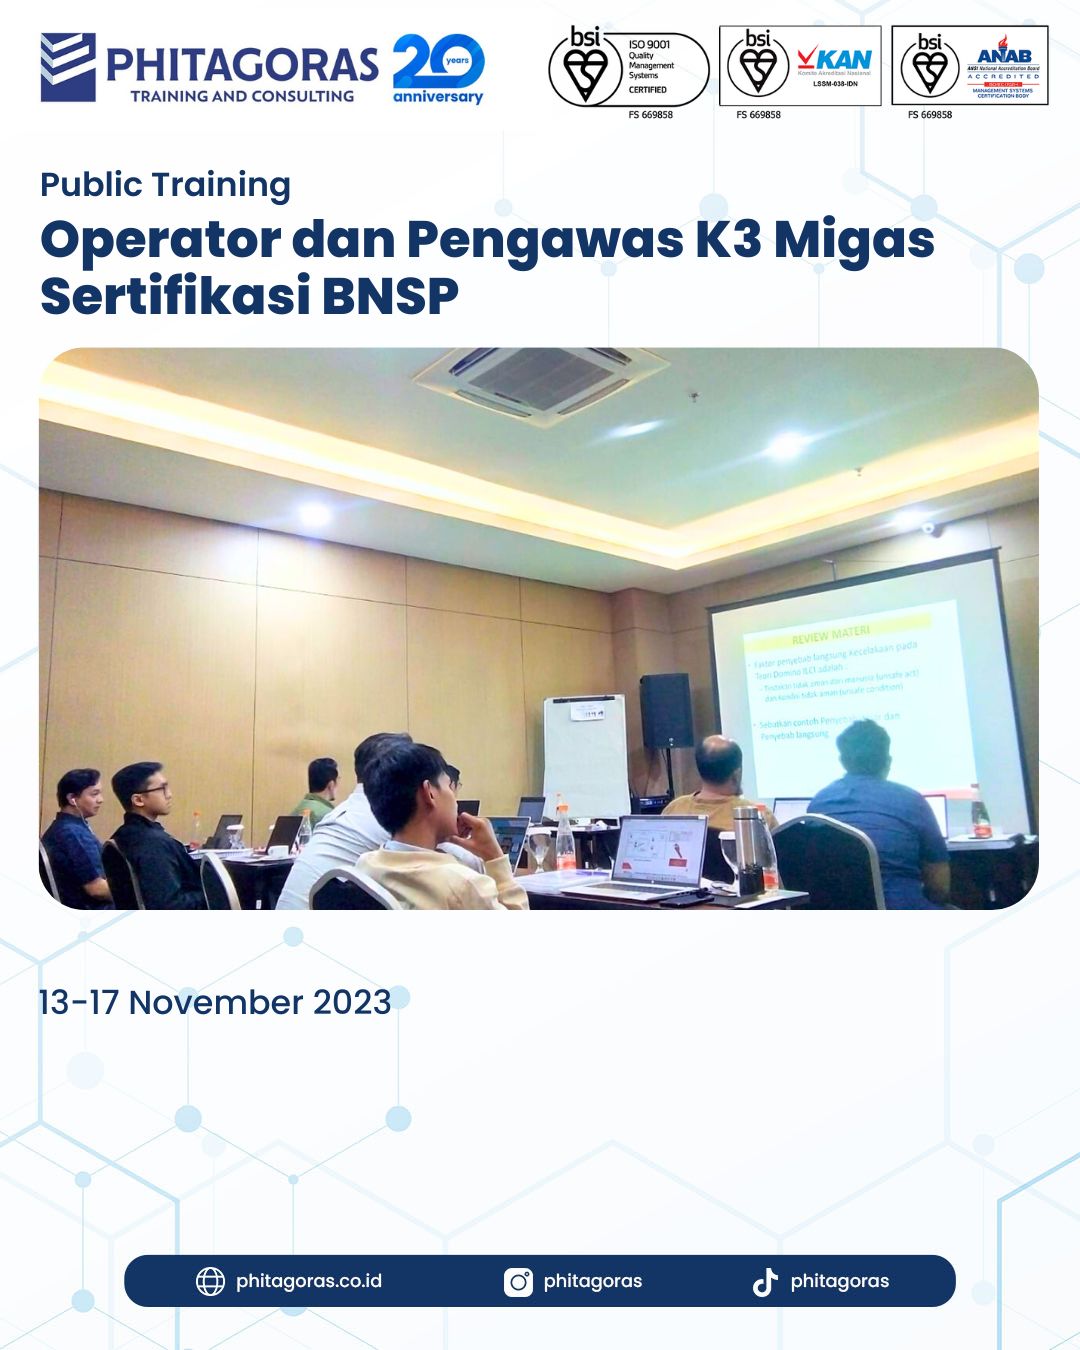 Public Training Operator dan Pengawas K3 Migas Sertifikasi BNSP